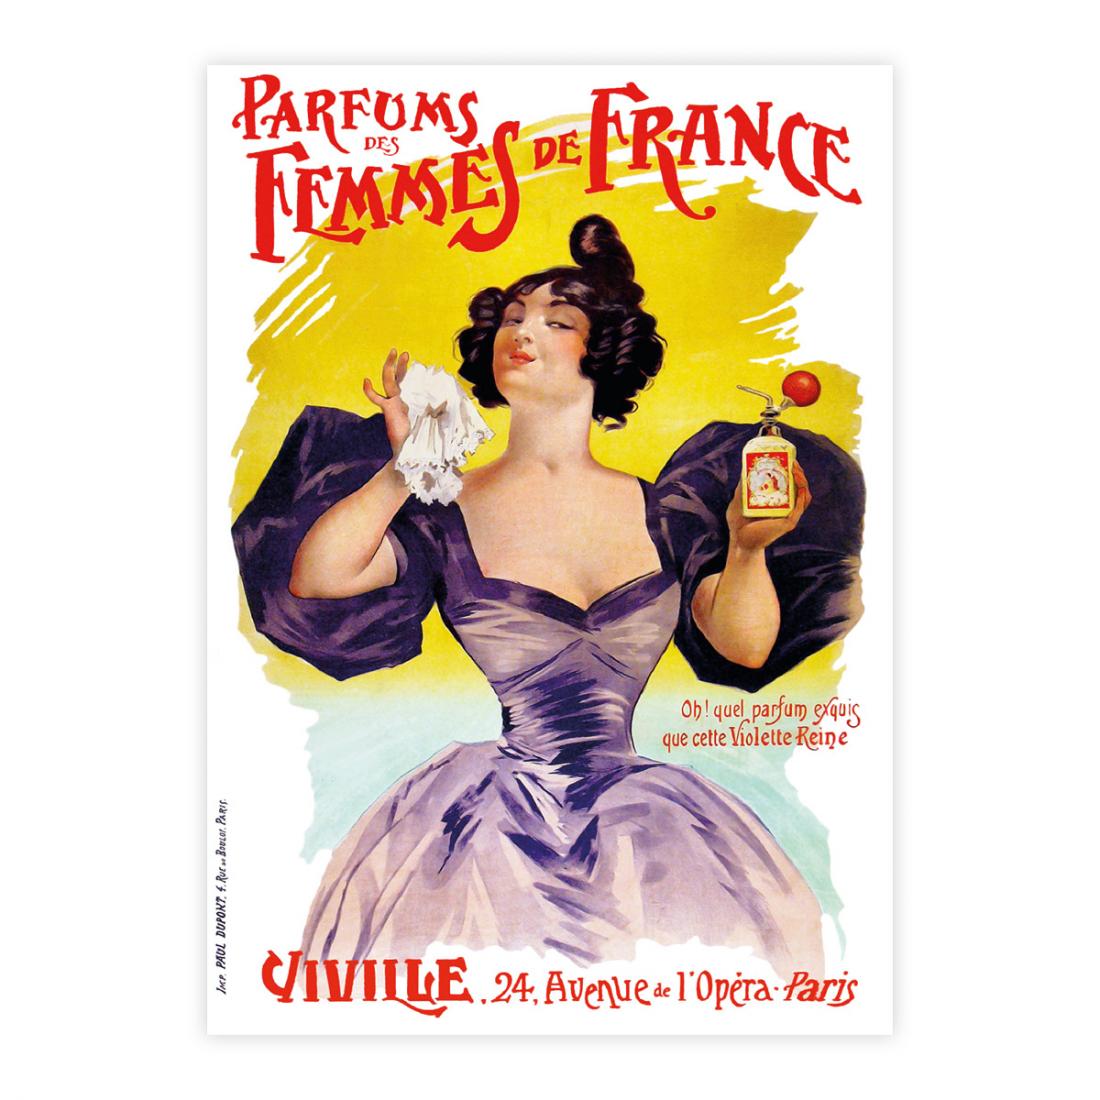 Parfums des Femmes de France